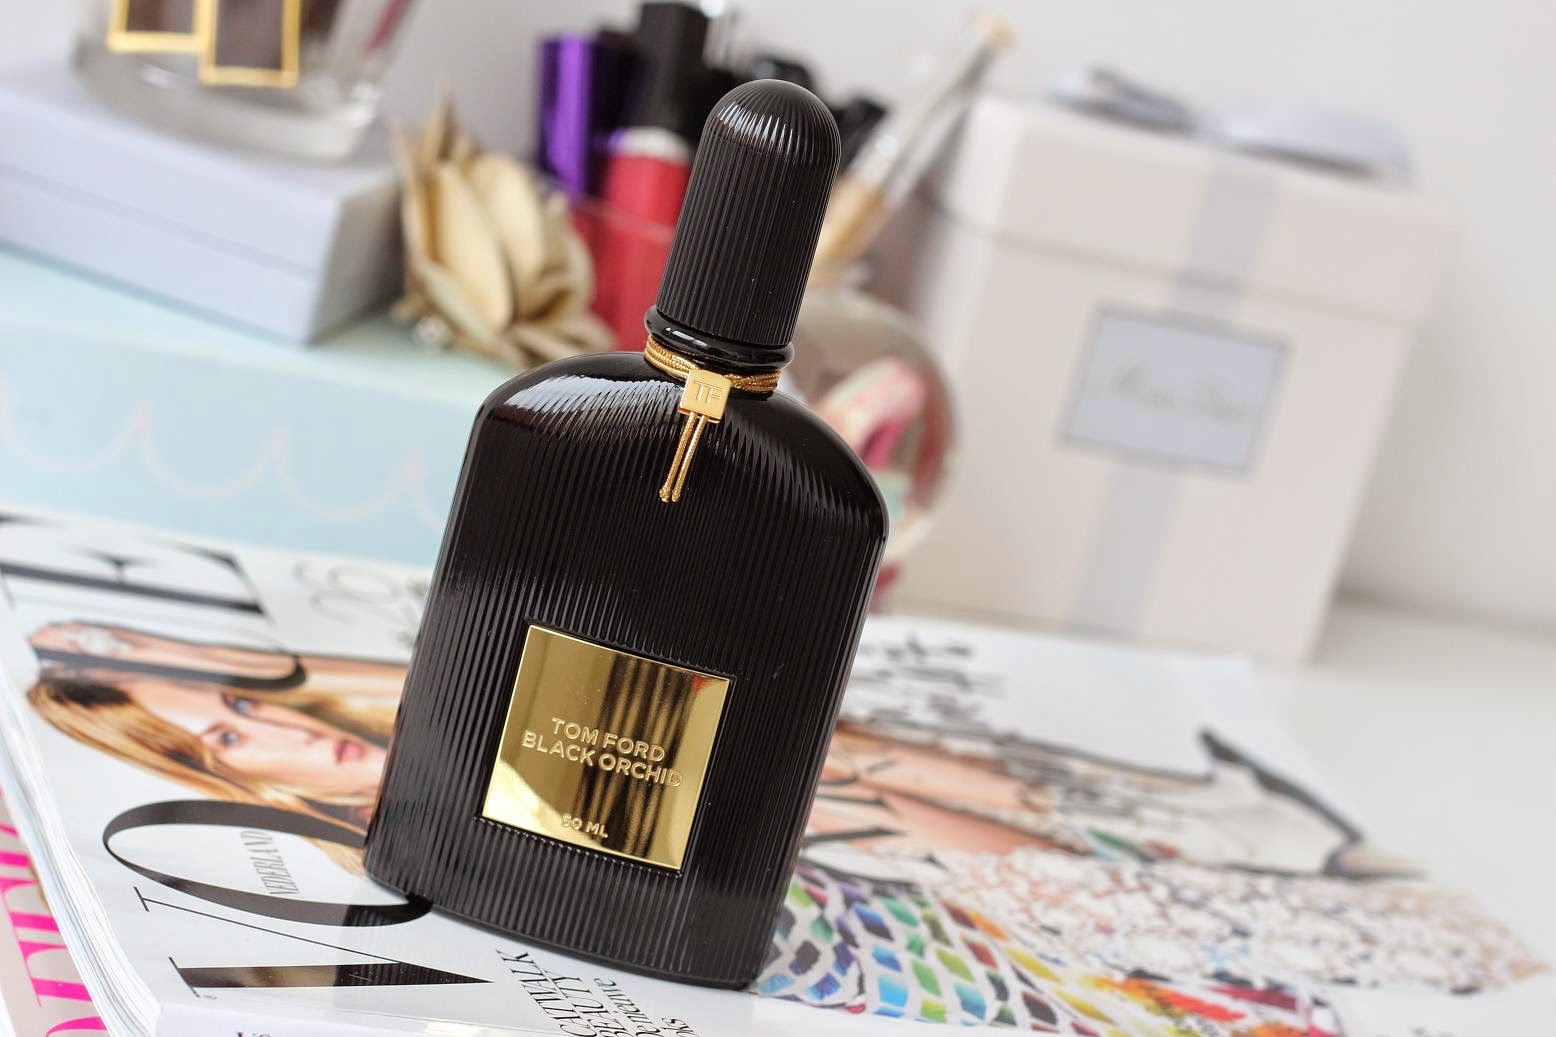 Tom Ford Black Orchid eau de parfum